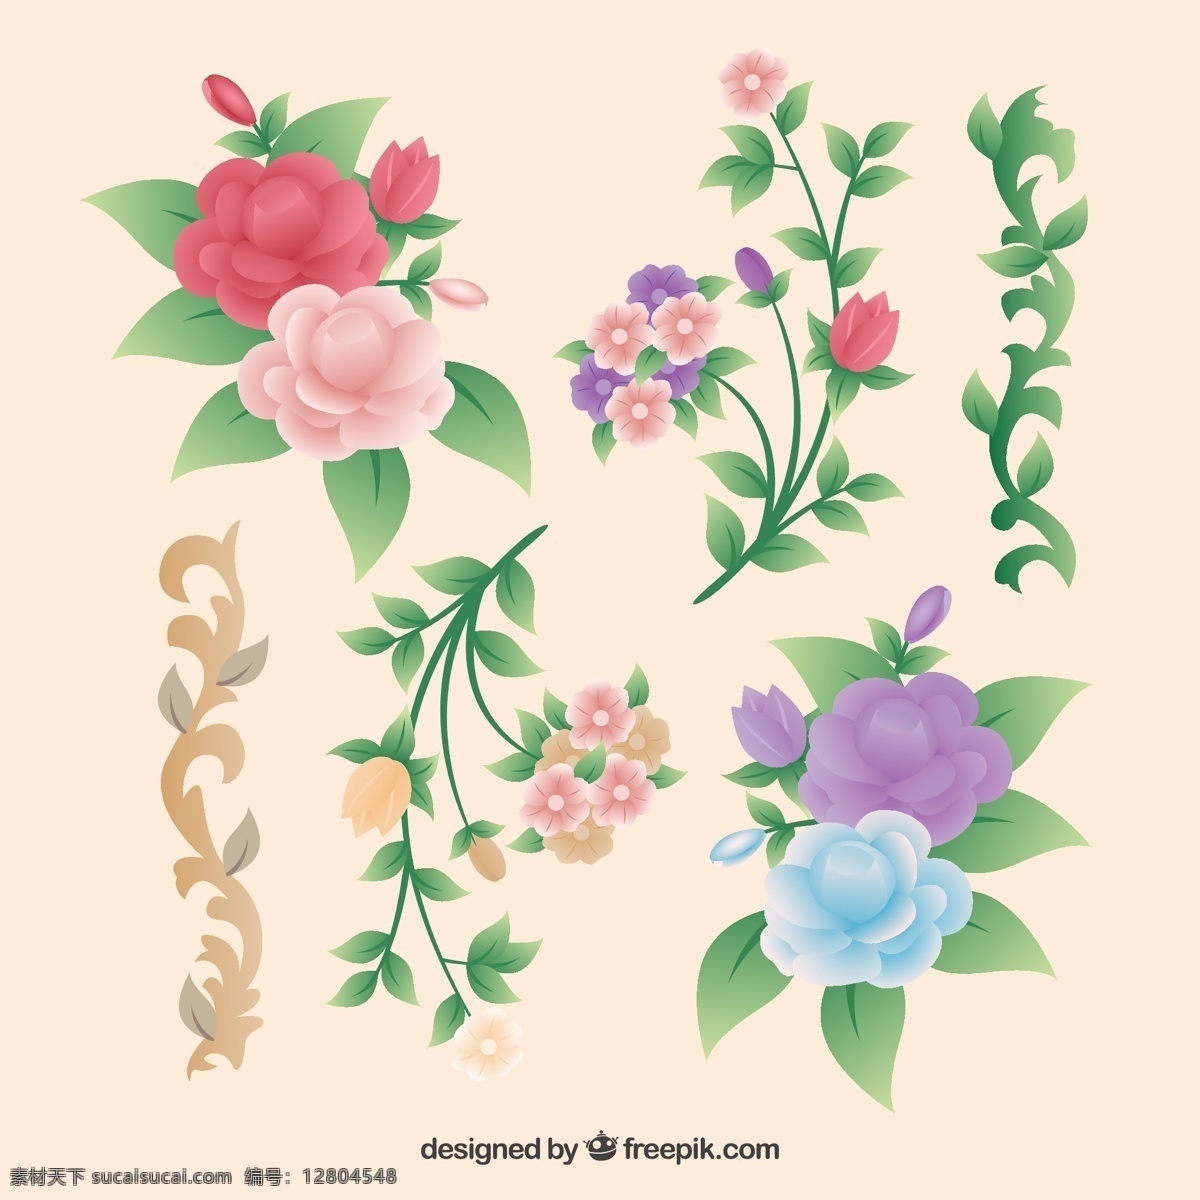 一群 树叶 复古 玫瑰 复古的玫瑰 玫瑰花 花卉素材 卡通素材 矢量素材 白色